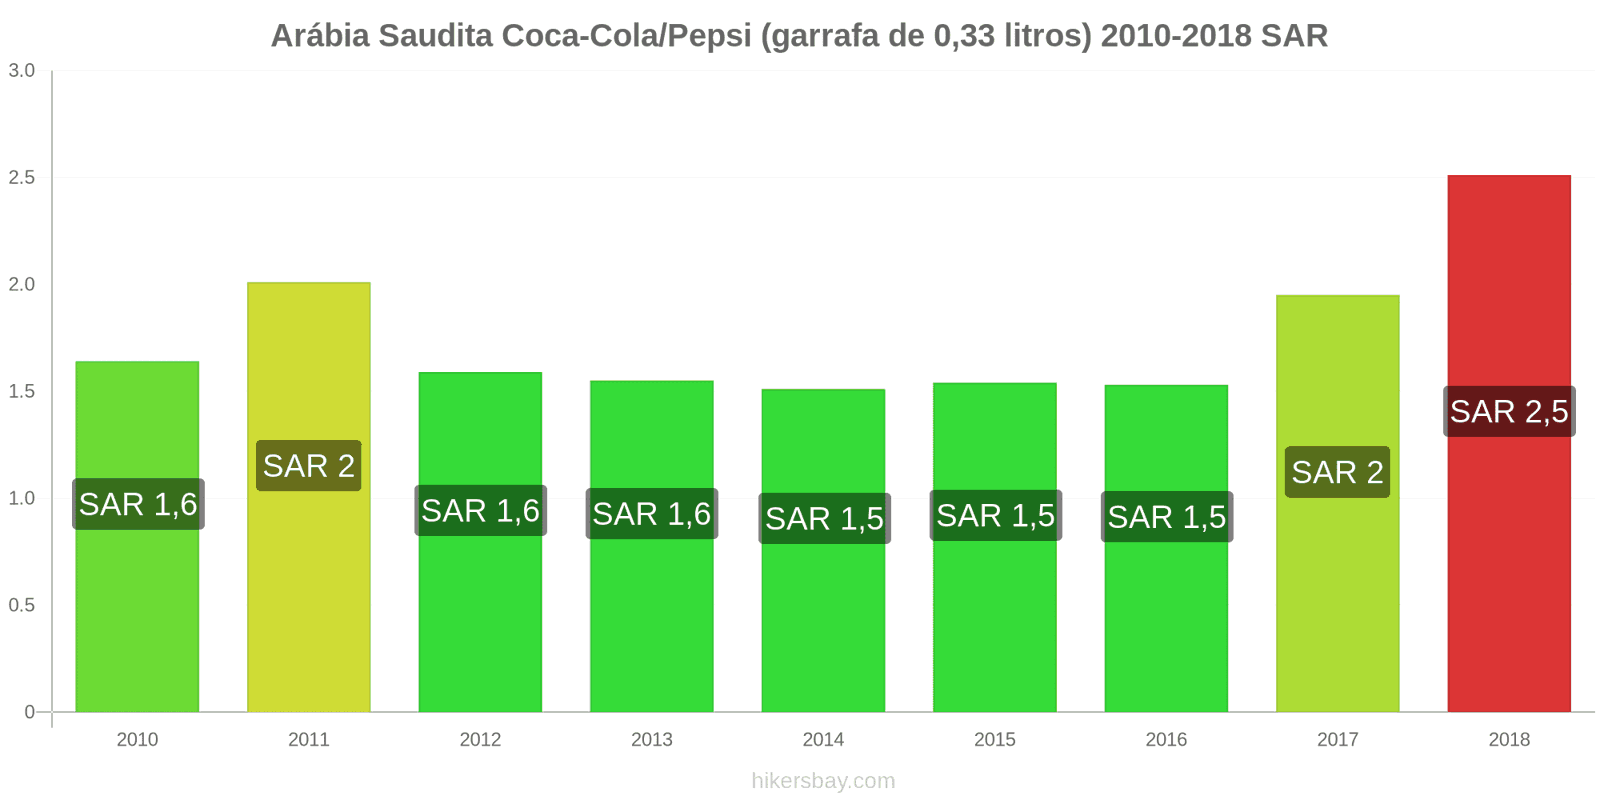 Arábia Saudita mudanças de preços Coca-Cola/Pepsi (garrafa de 0.33 litros) hikersbay.com